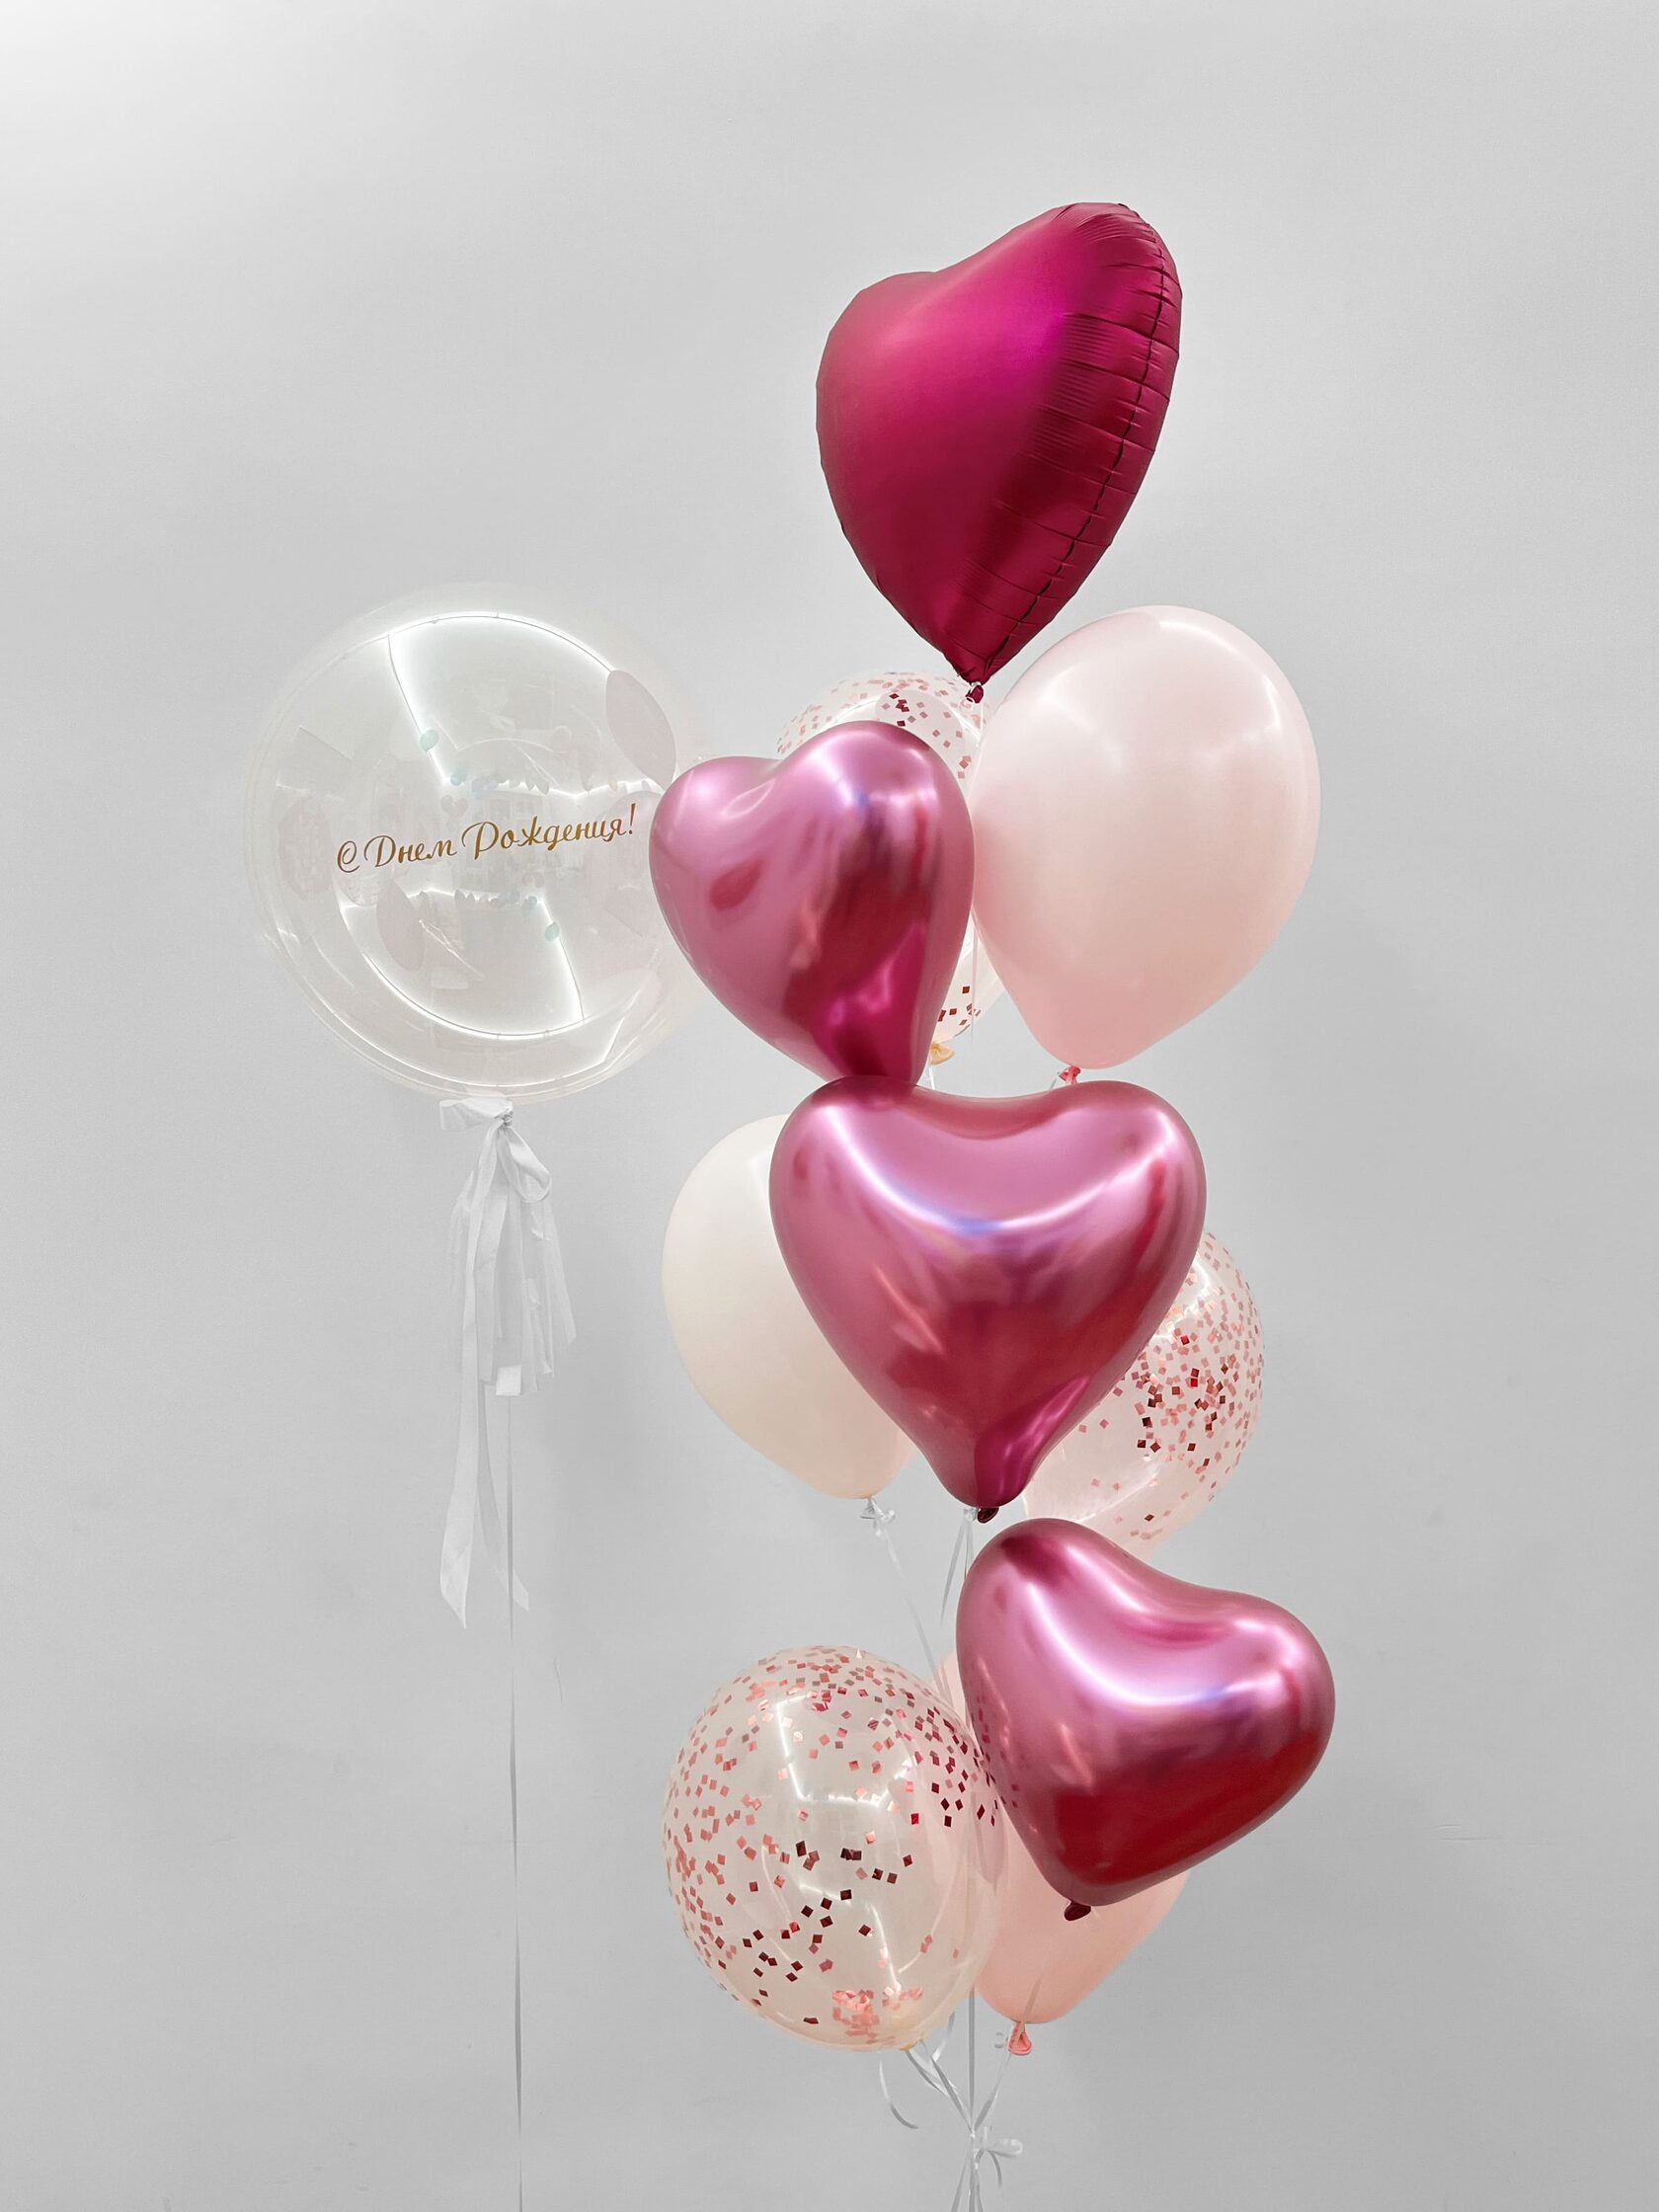 фонтан из воздушных шаров 1 сентября клен Фонтан из шаров «Малиновое сияние» - 10 шаров + шар Bubbles (сфера) - розовое конфетти